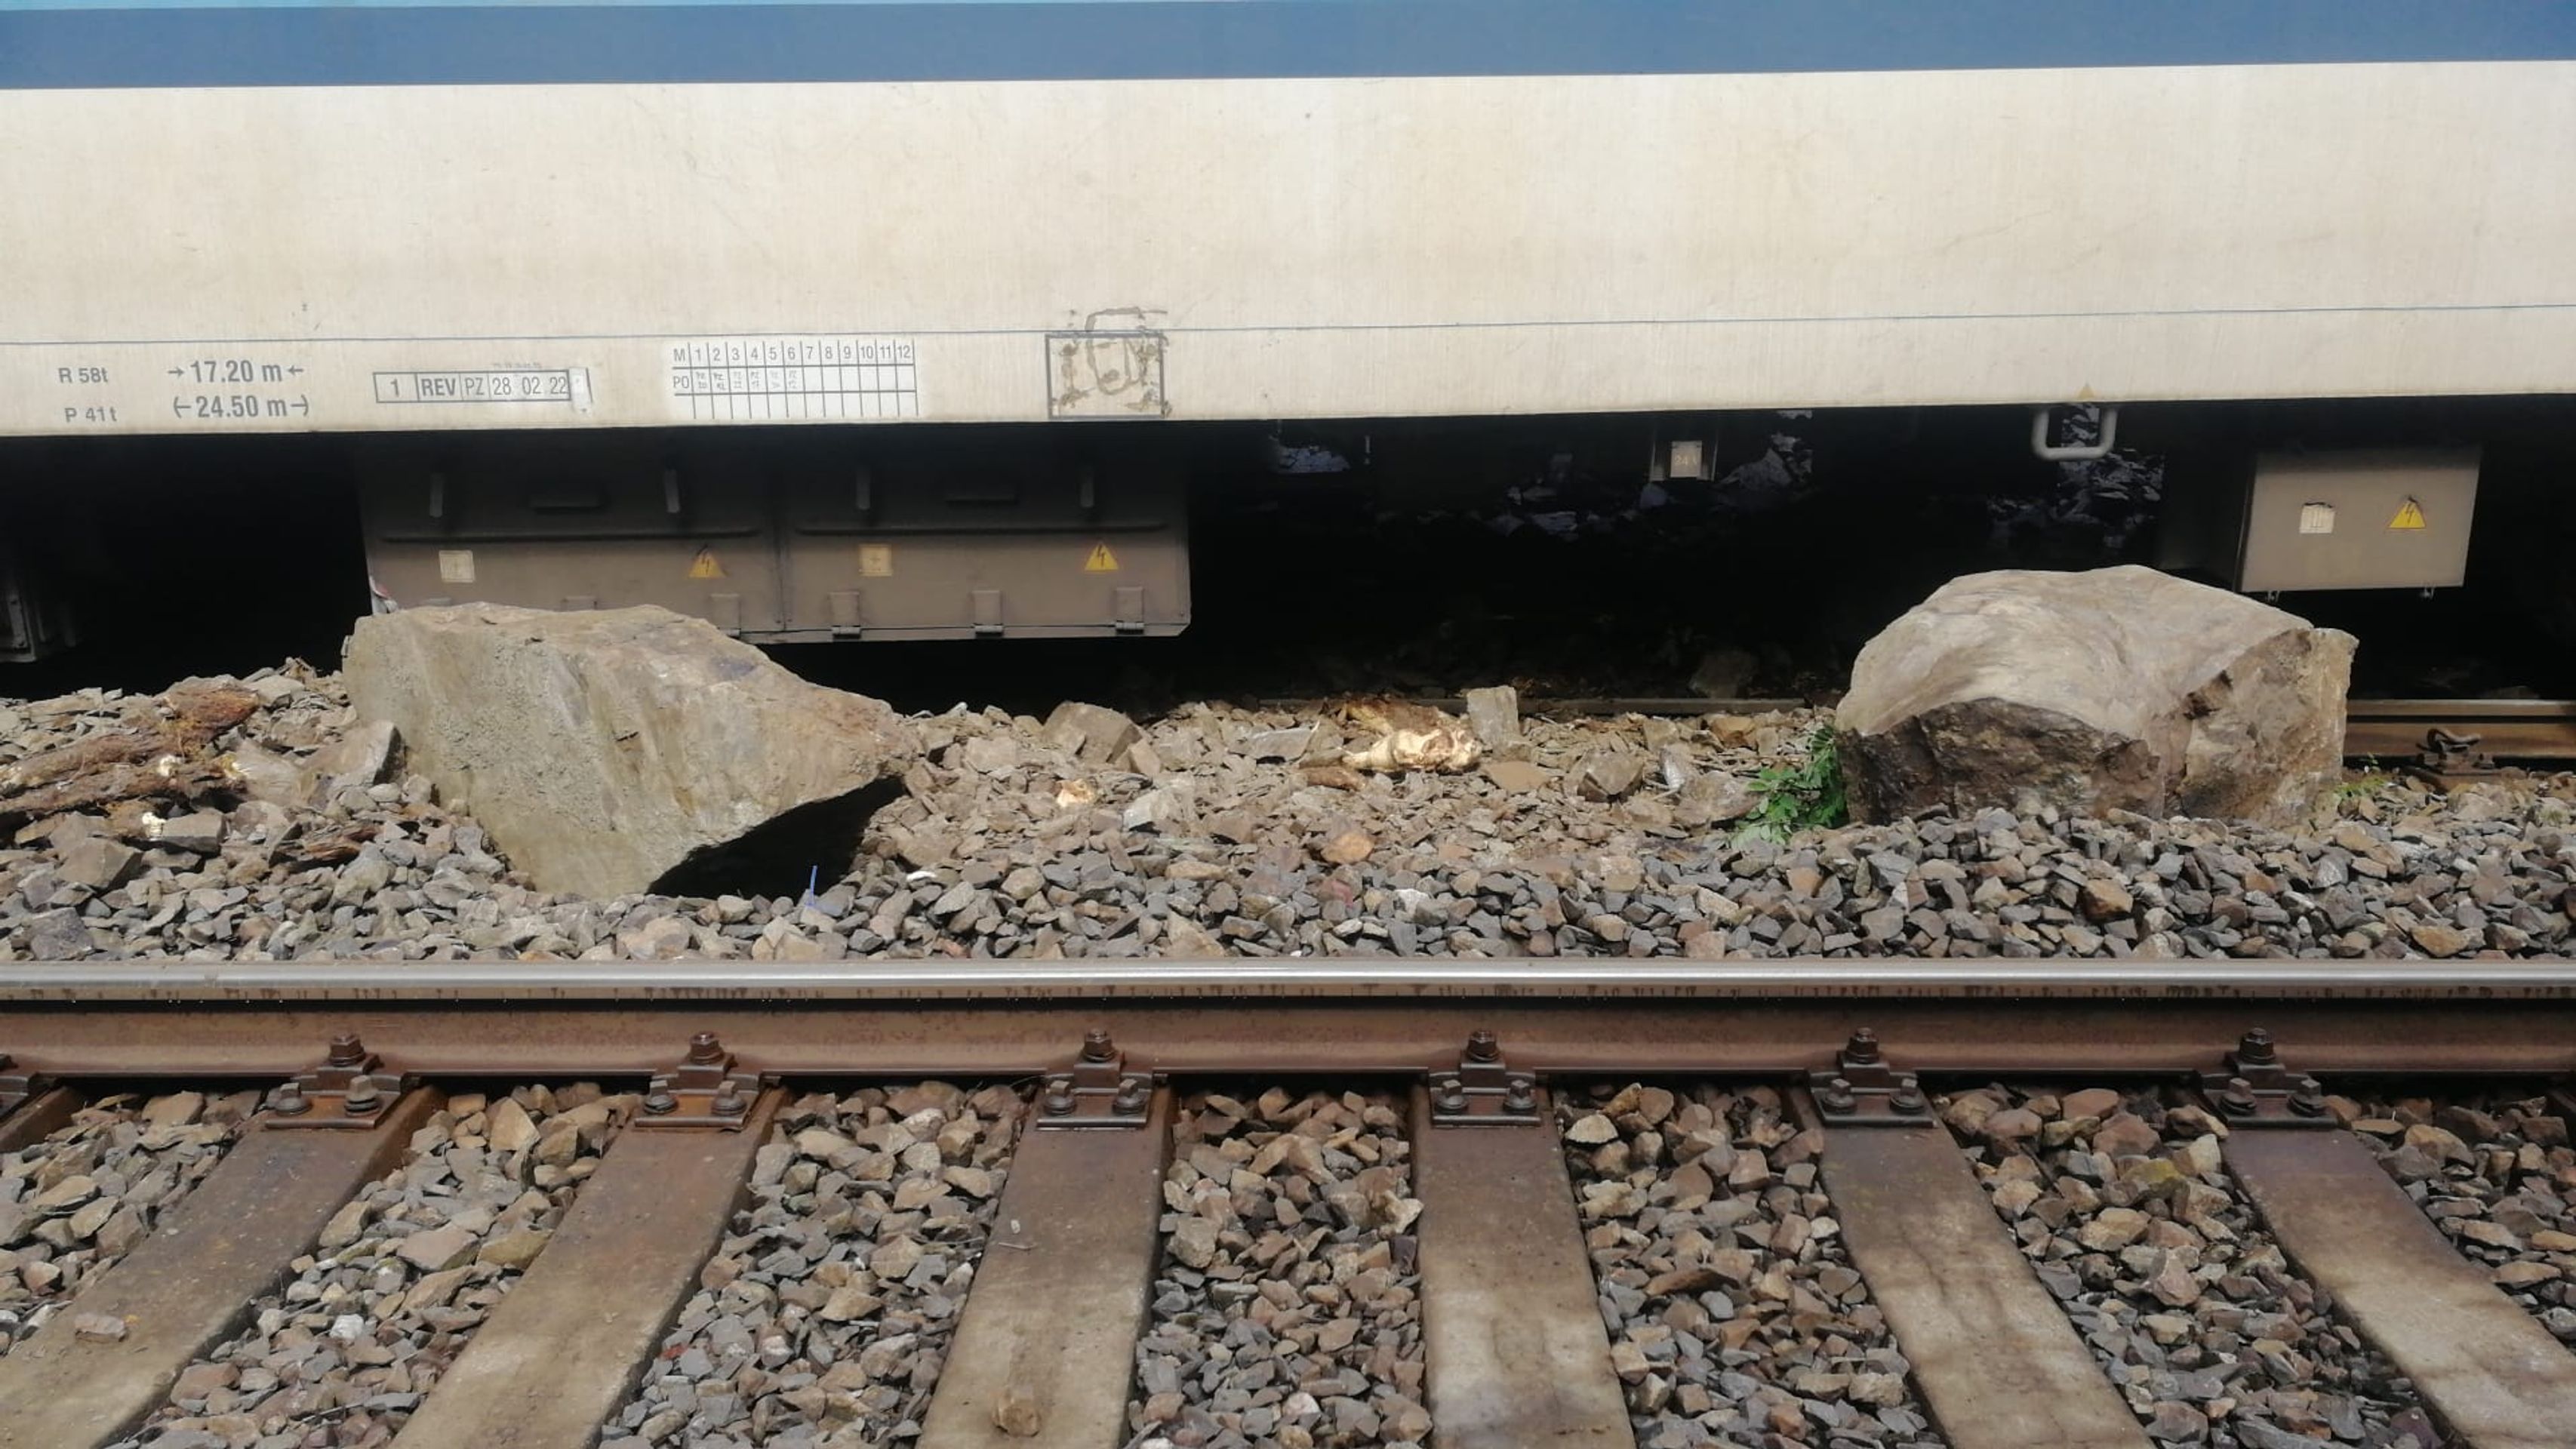 Vykolejení vlaku (2) - Vykolejení vlaku Karlštejn - Zadní Třebaň (2/7)